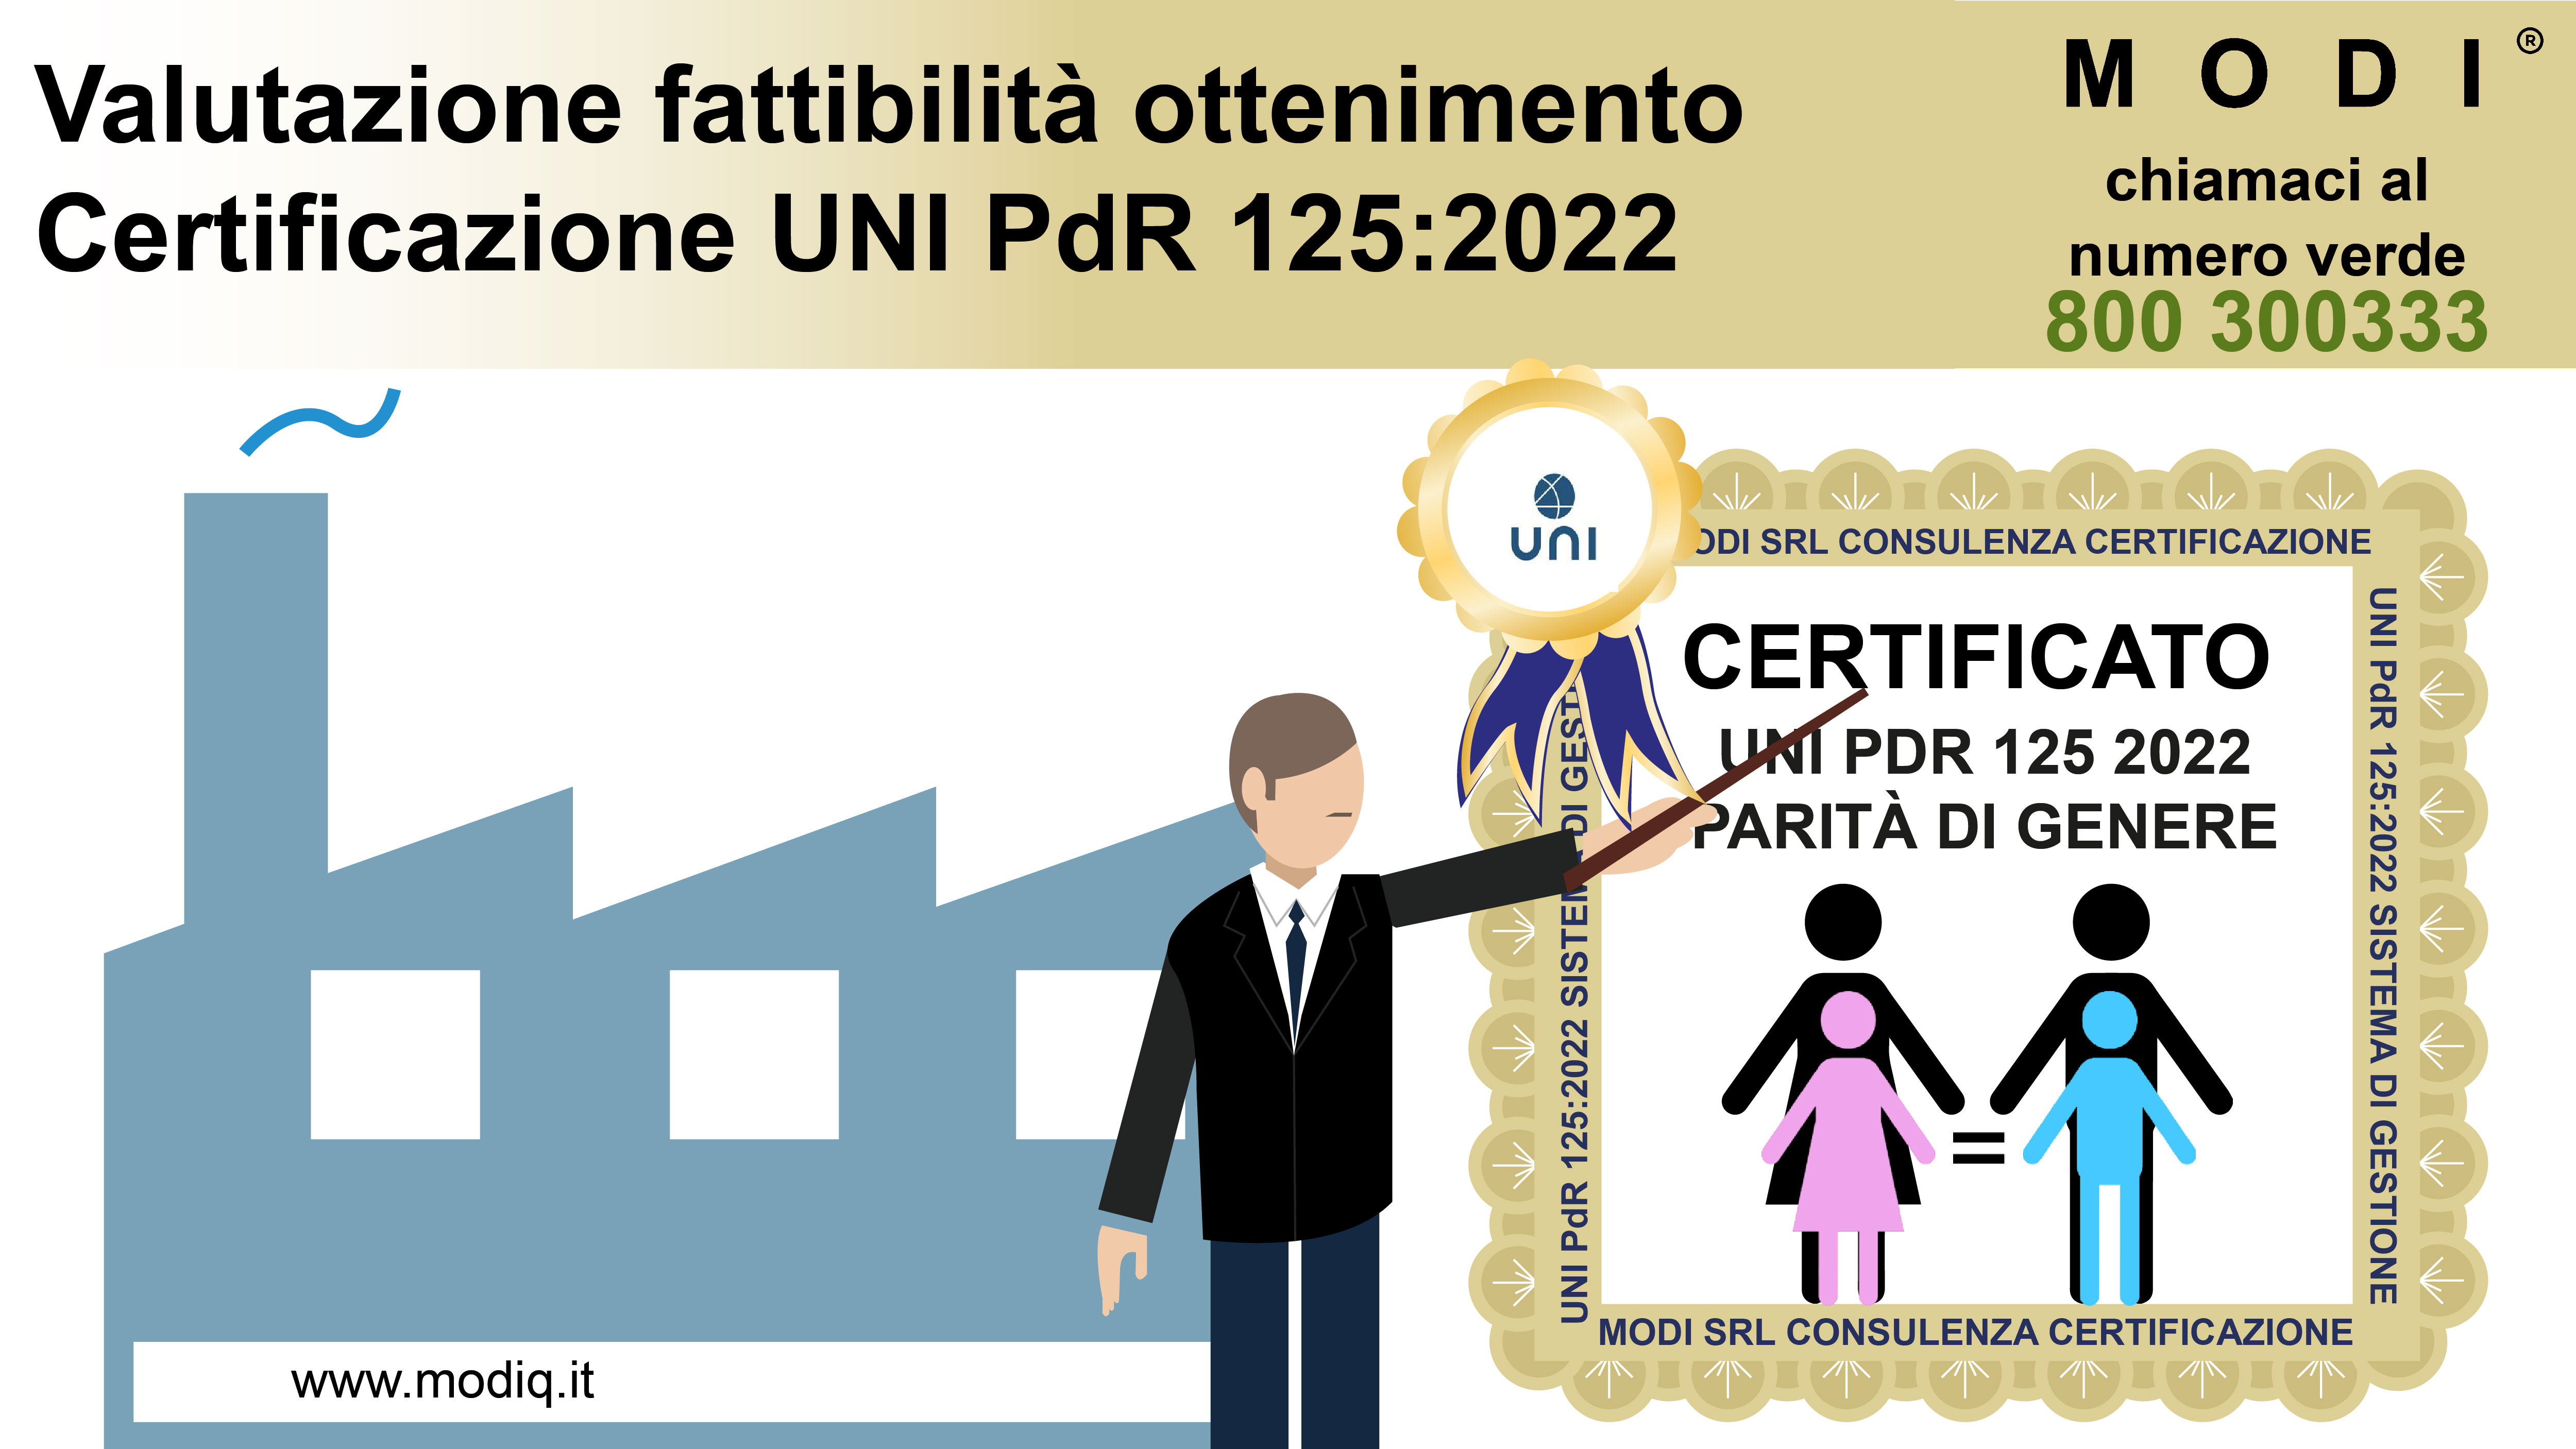 consulenti esperti in certificazione parità di genere UNI Pdr 125:2022